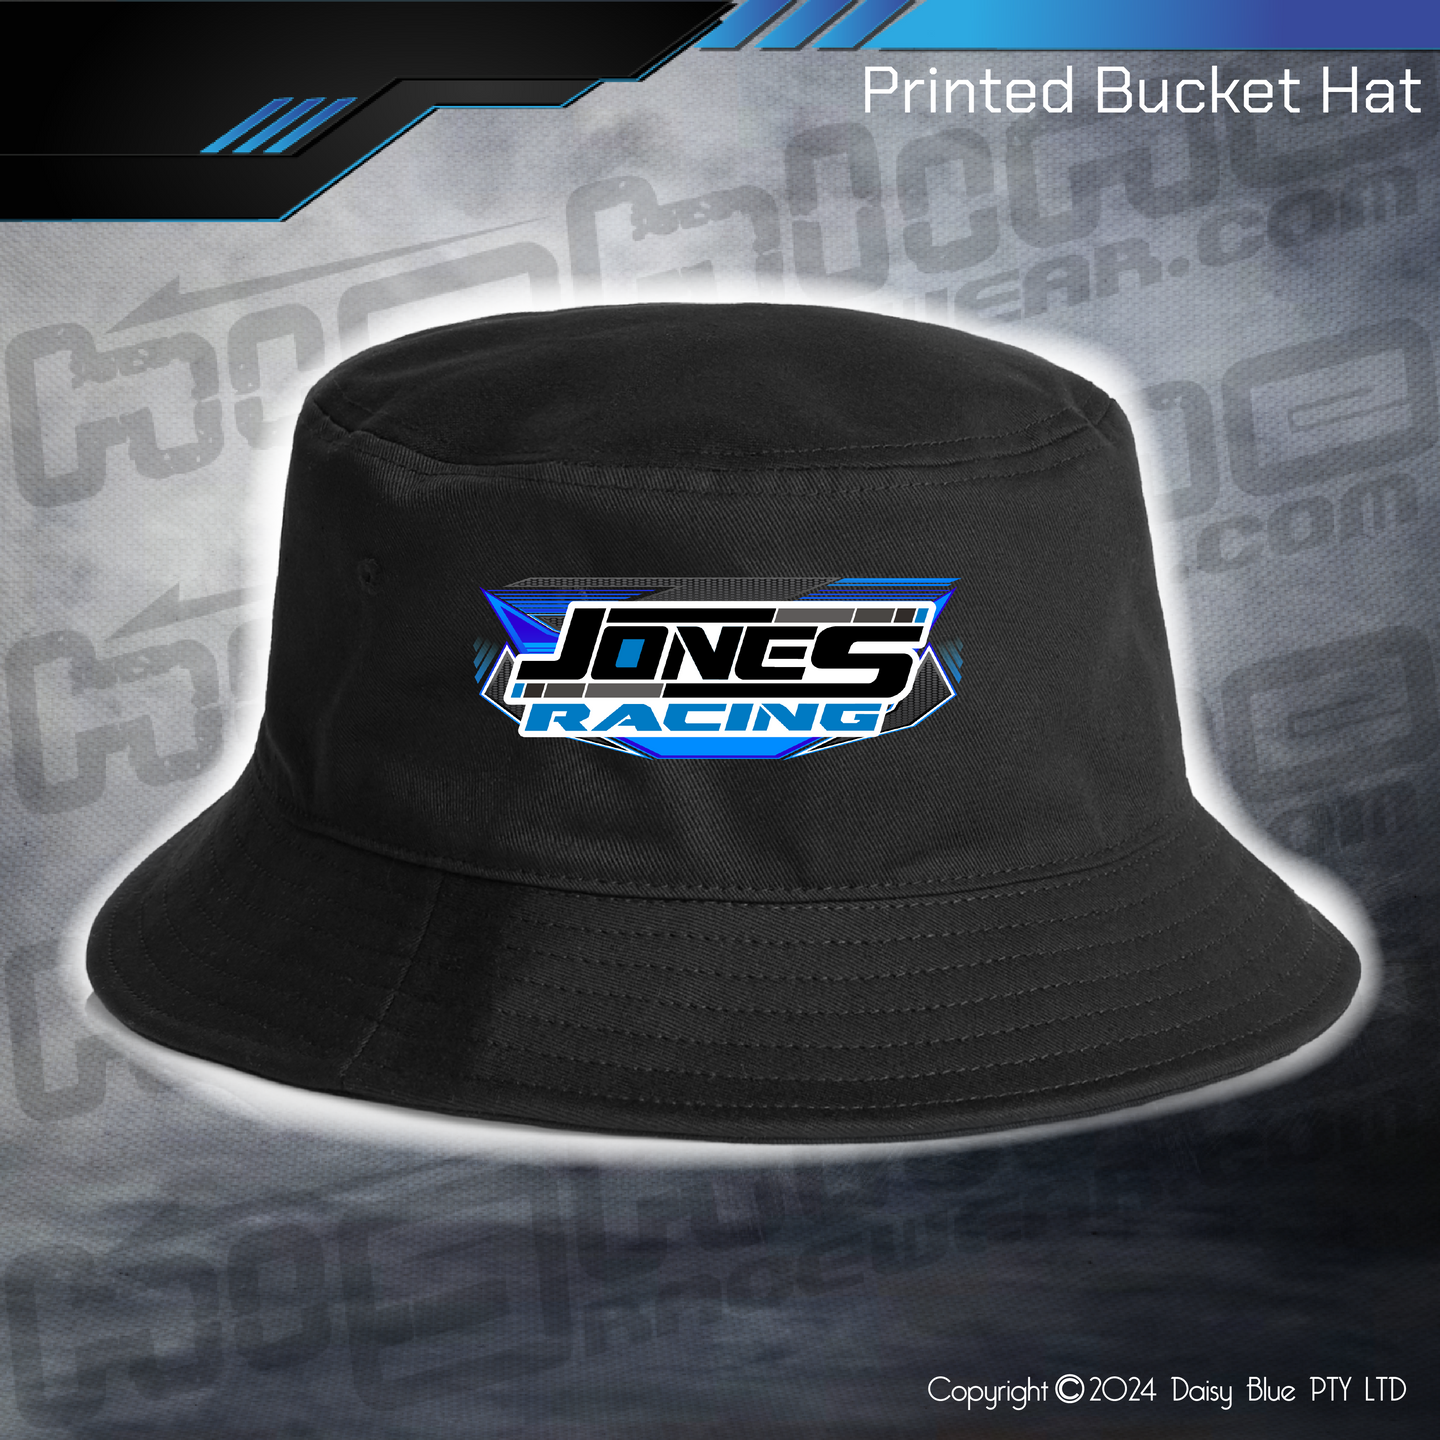 Printed Bucket Hat - Jones Racing